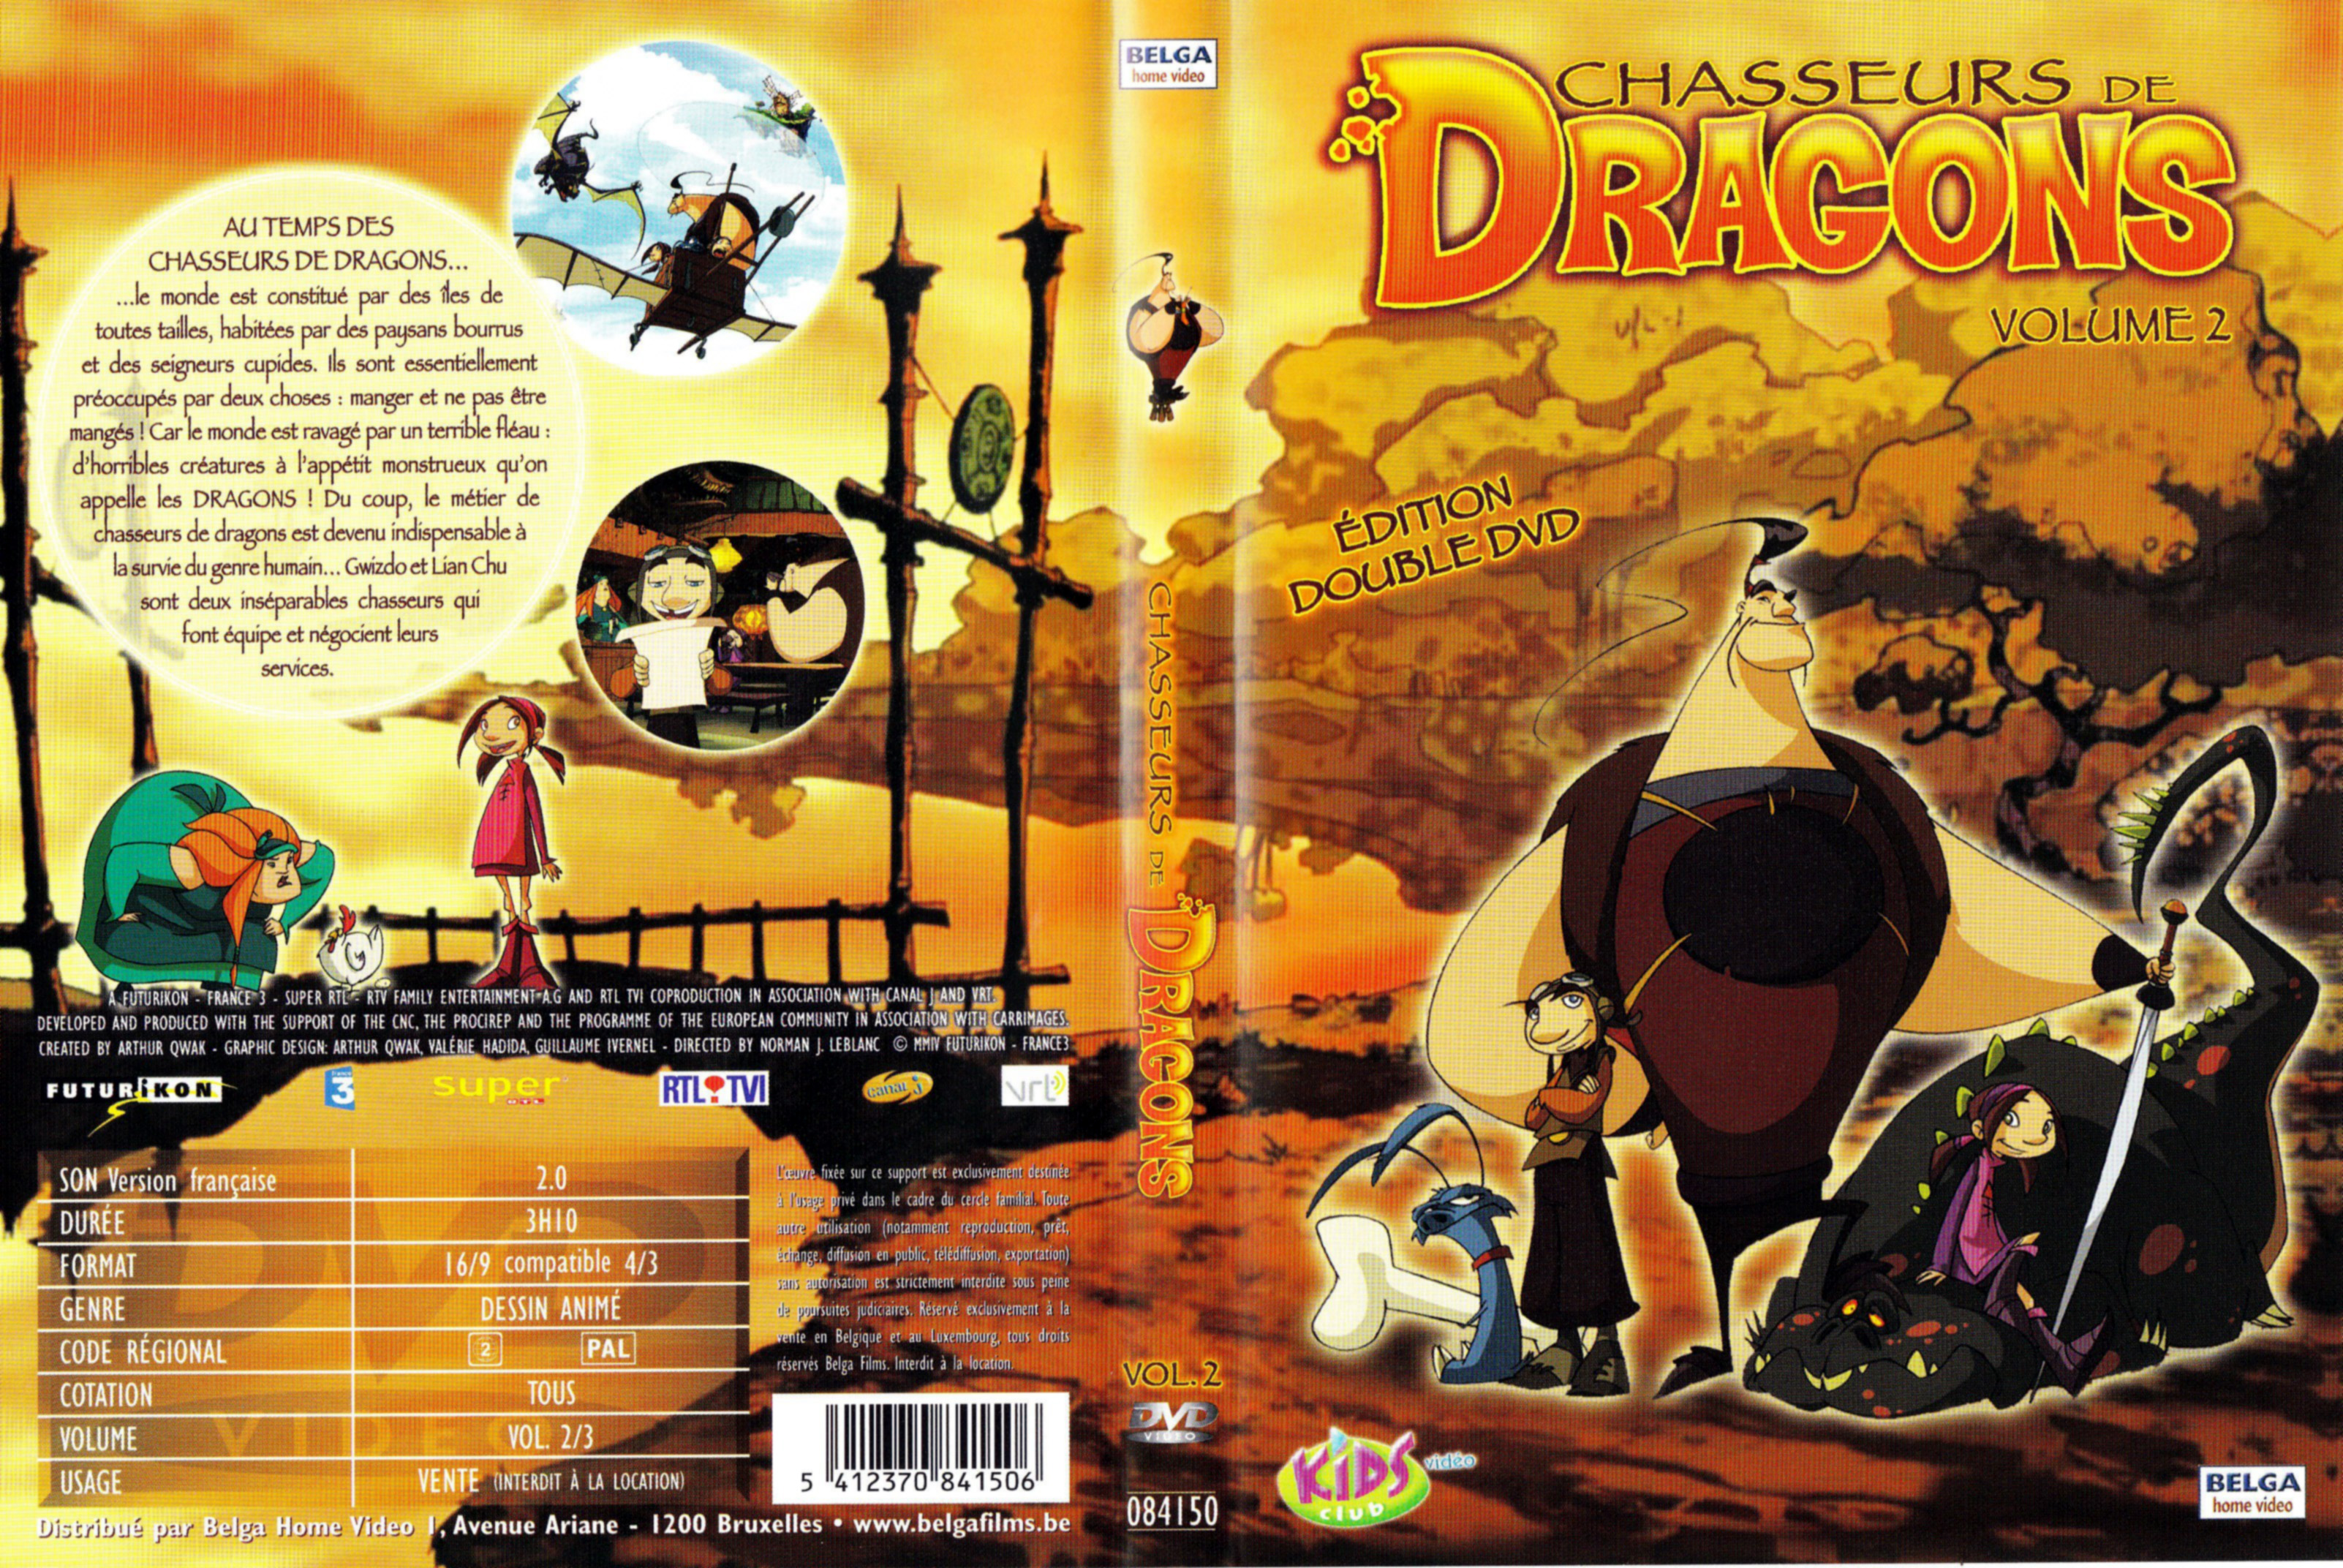 Jaquette DVD Chasseurs de dragons vol 2